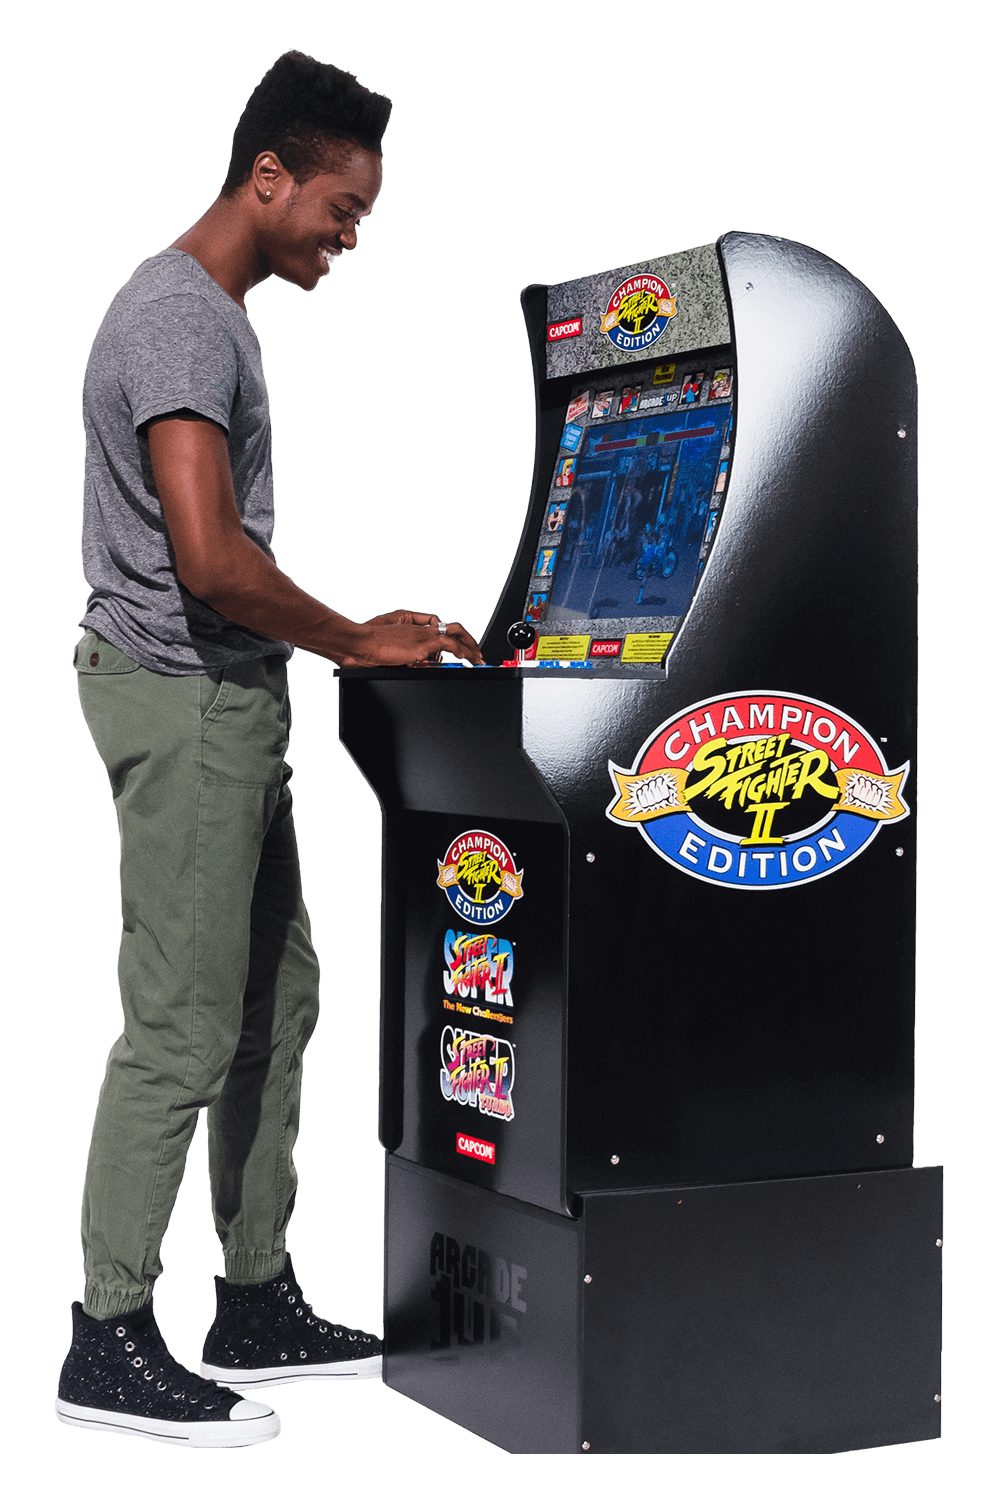 Street Fighter Arcade Cabinet Arcade1up